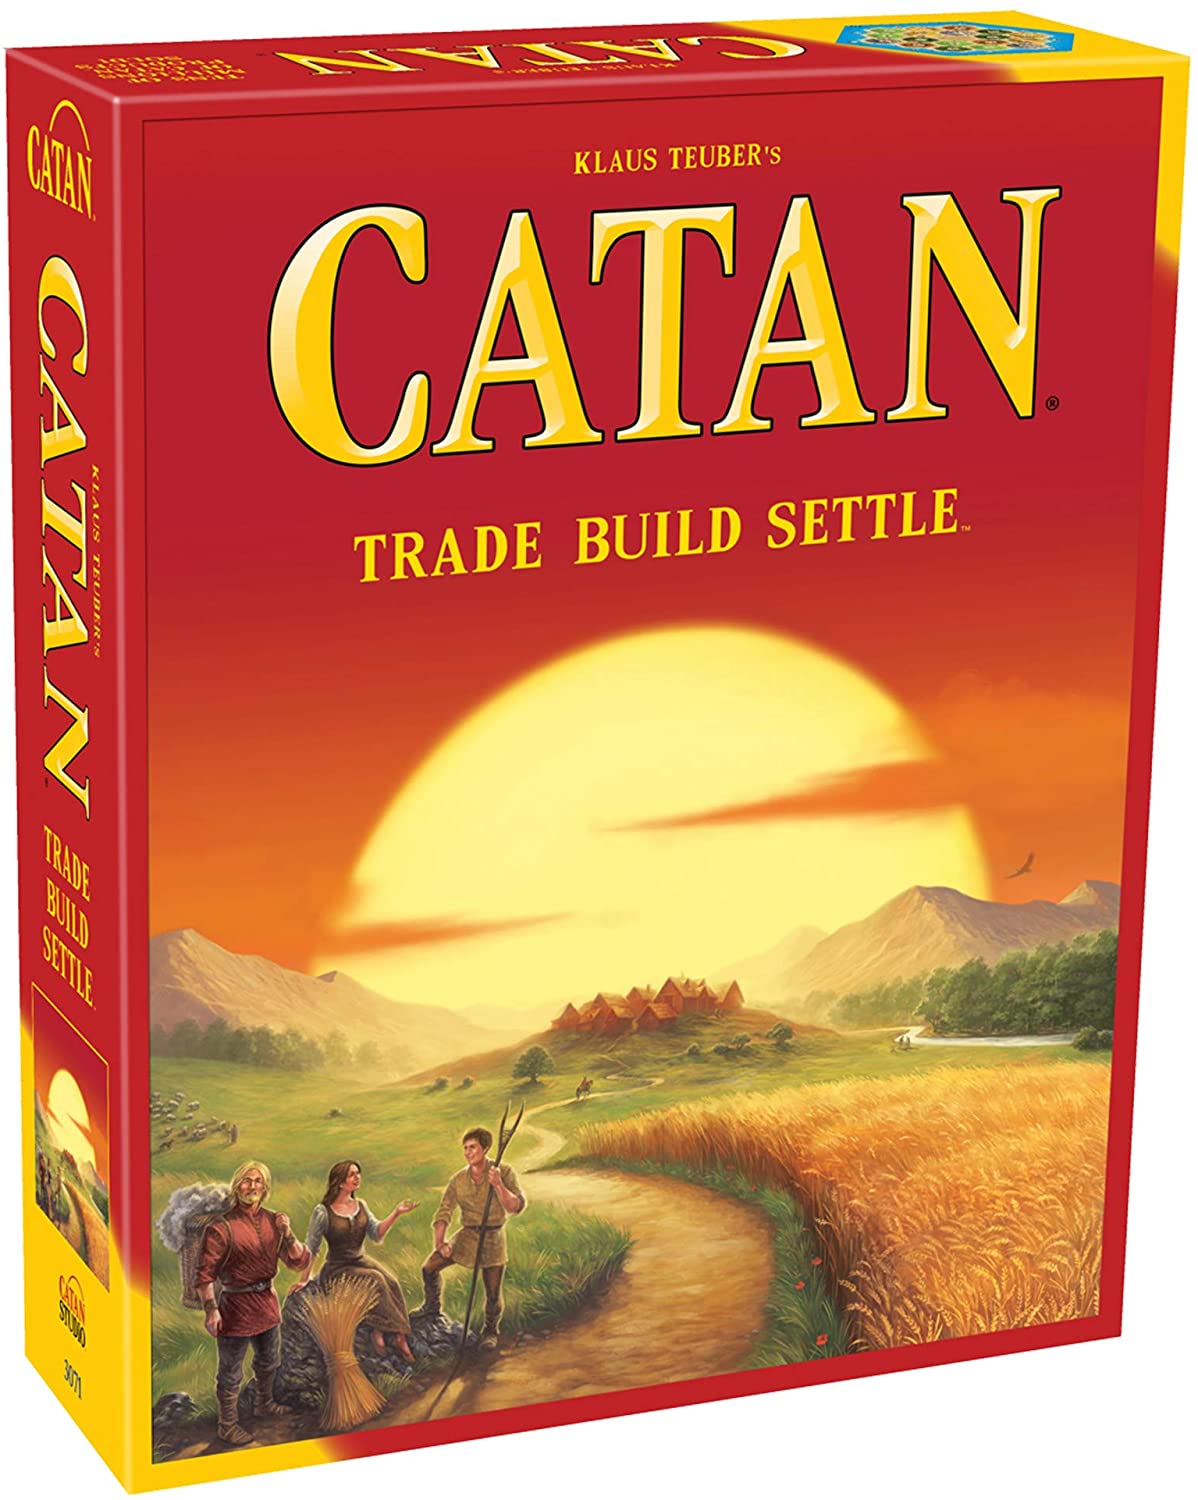 Catan Studio The Catan Board Game